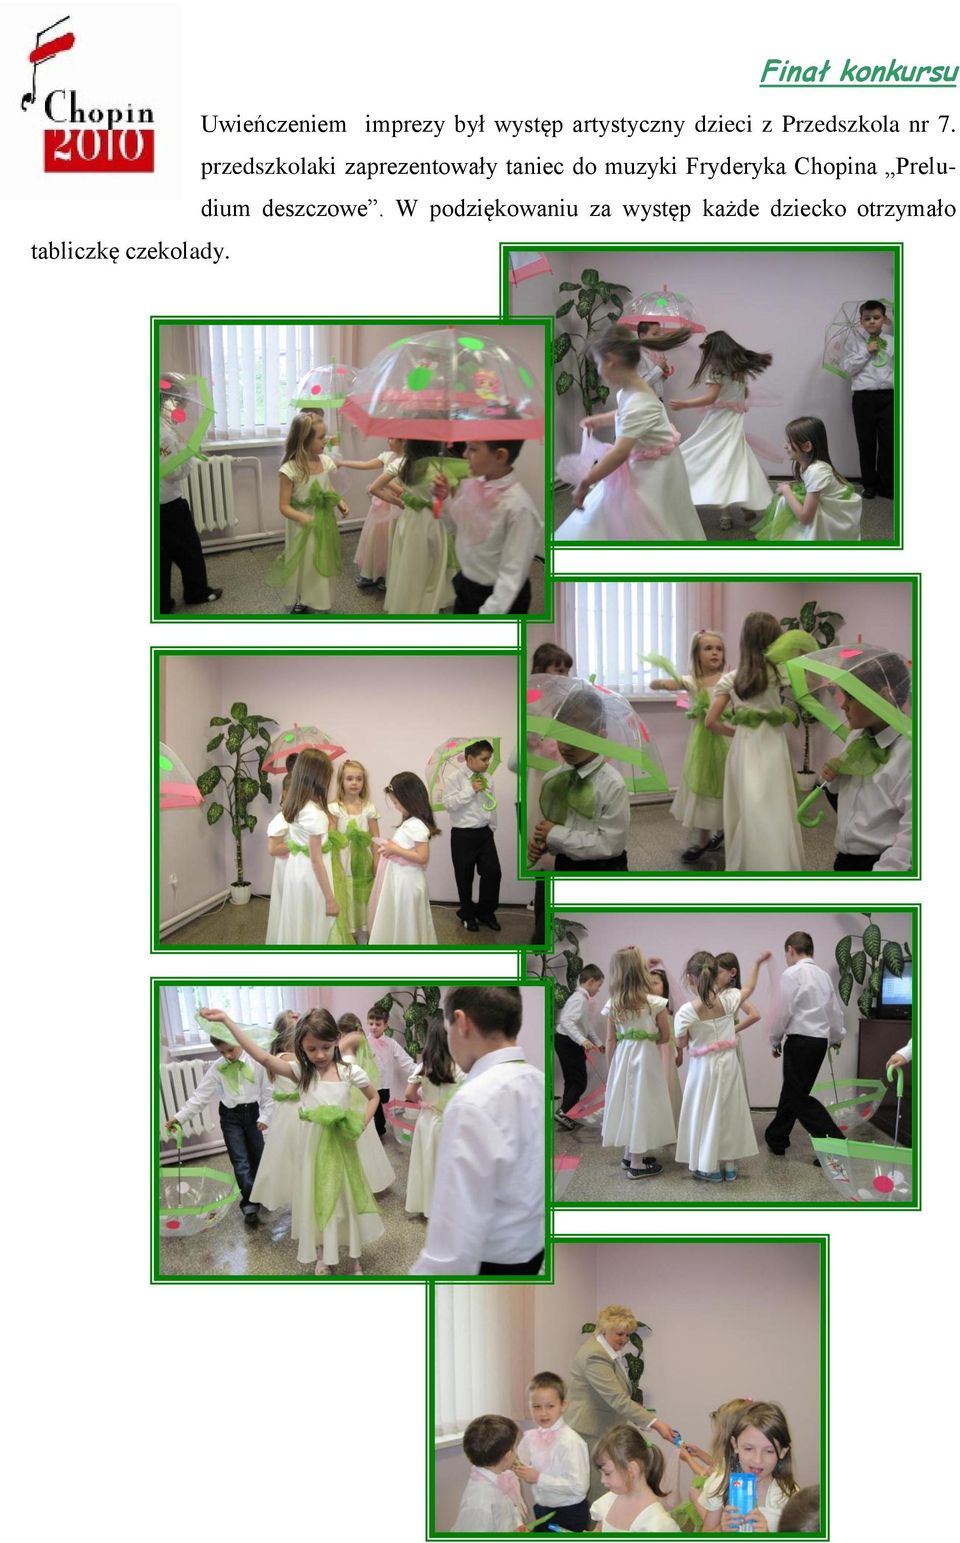 przedszkolaki zaprezentowały taniec do muzyki Fryderyka